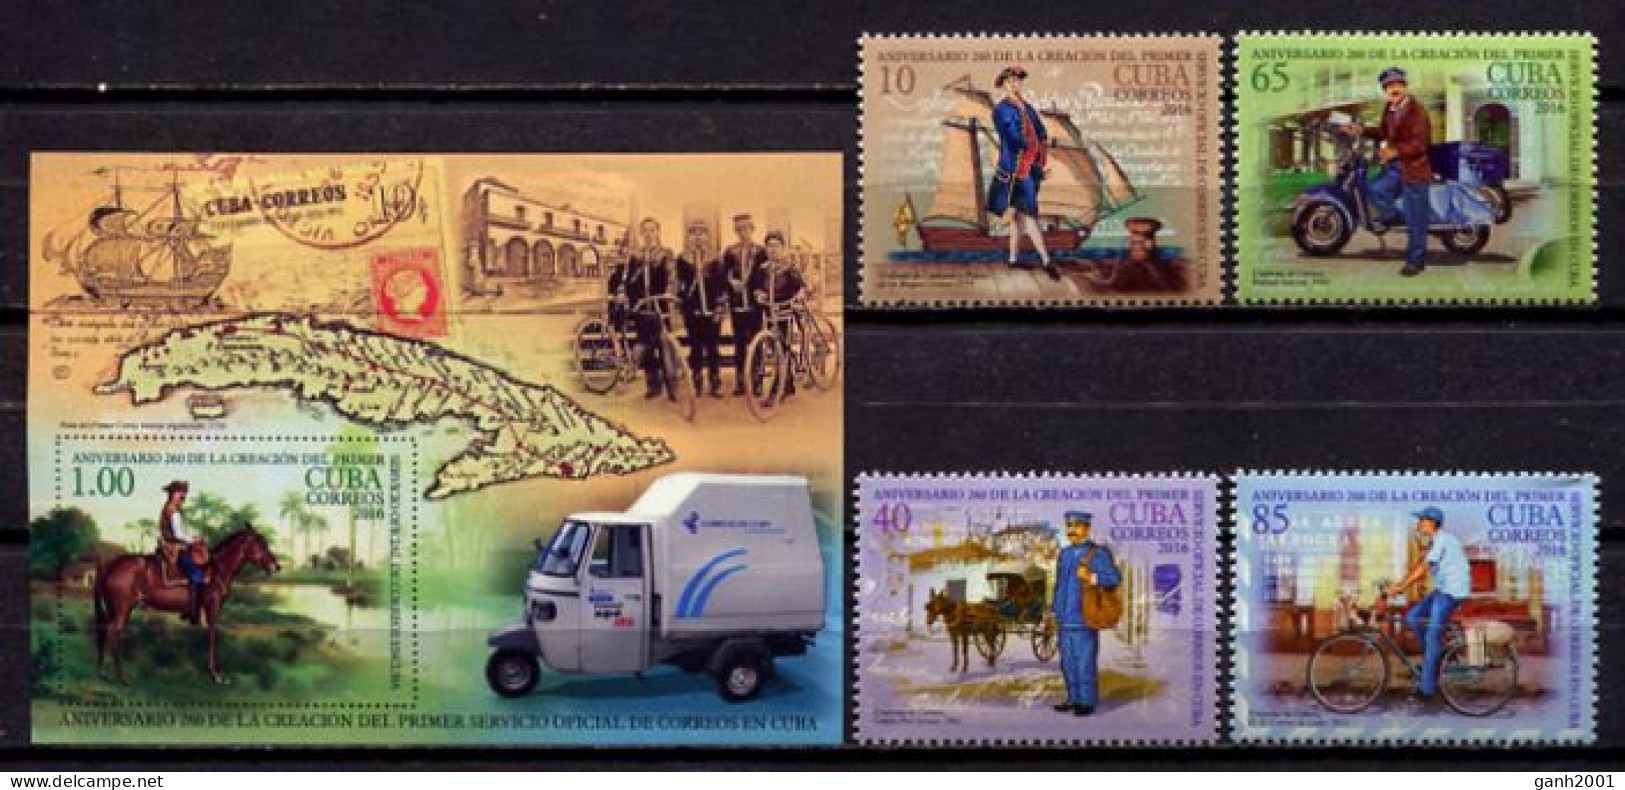 Cuba 2016 / 260 Years Of Postal Service MNH 260 Años Del Correo 260 Jahre Post / Hz19  C1-6 - Posta